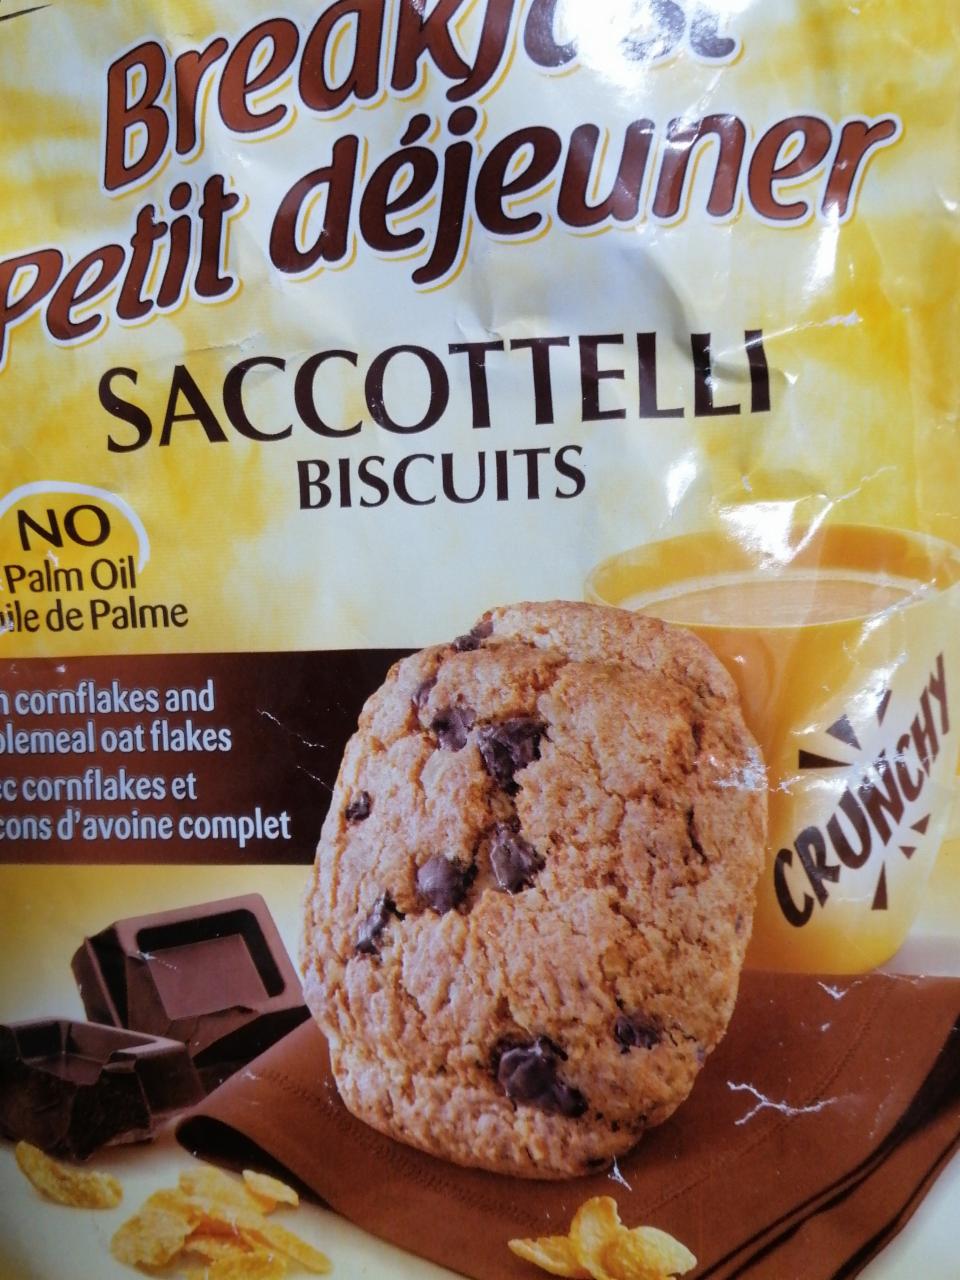 Фото - Печенье с шоколадными крошками Crunchy Balocco